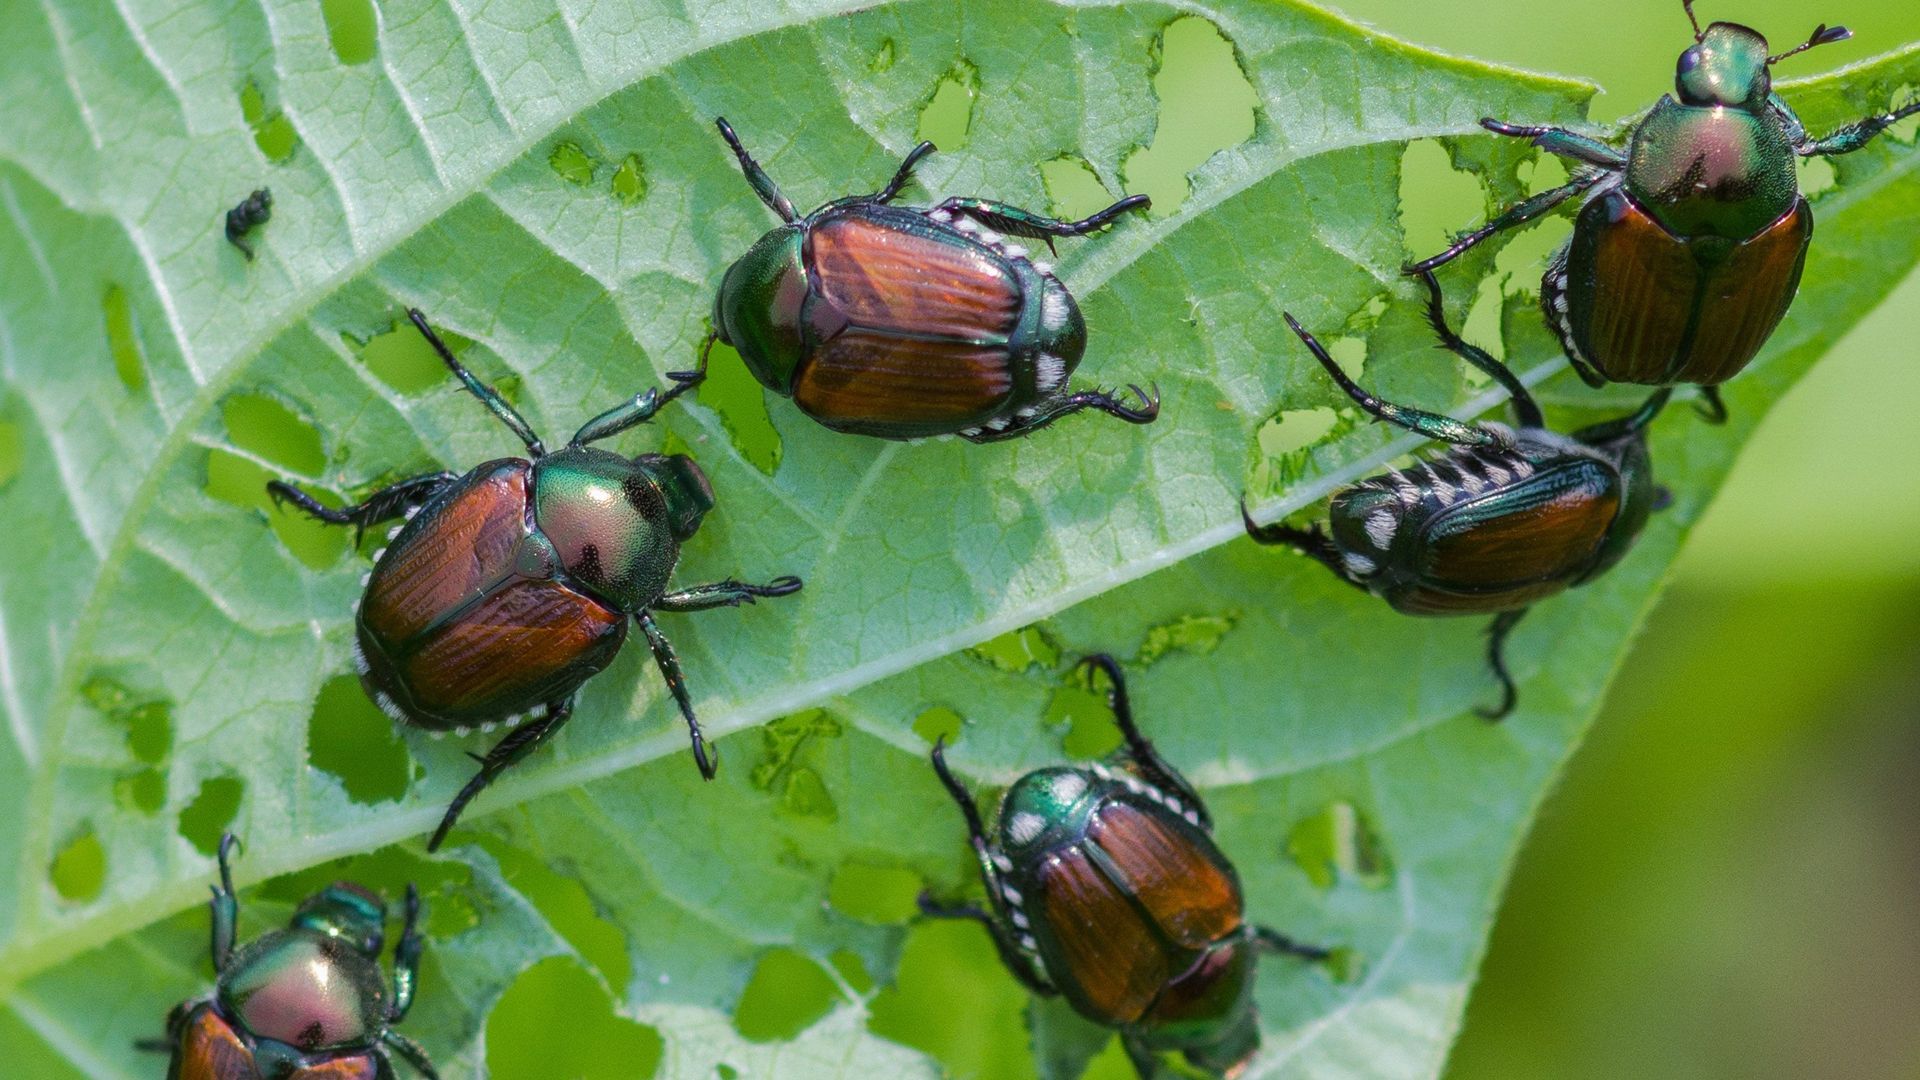 Le scarabée ou hanneton japonais (Popillia japonica) a été repéré en Italie en 2014 et en Suisse en 2017.